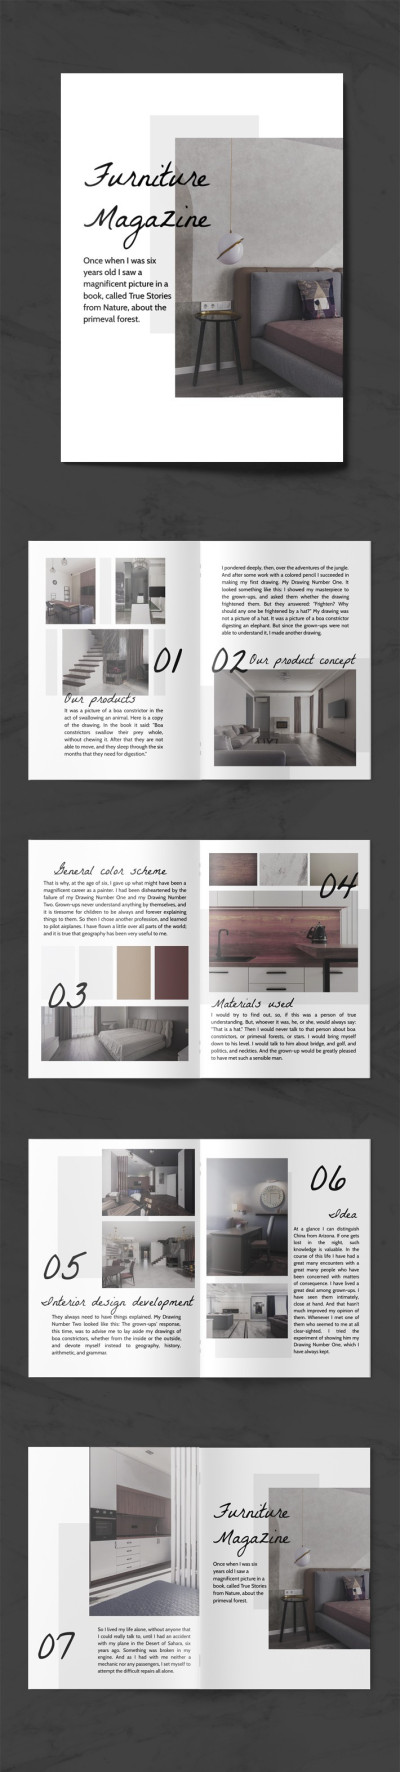 Magazine per mobili - Riviste di interior design